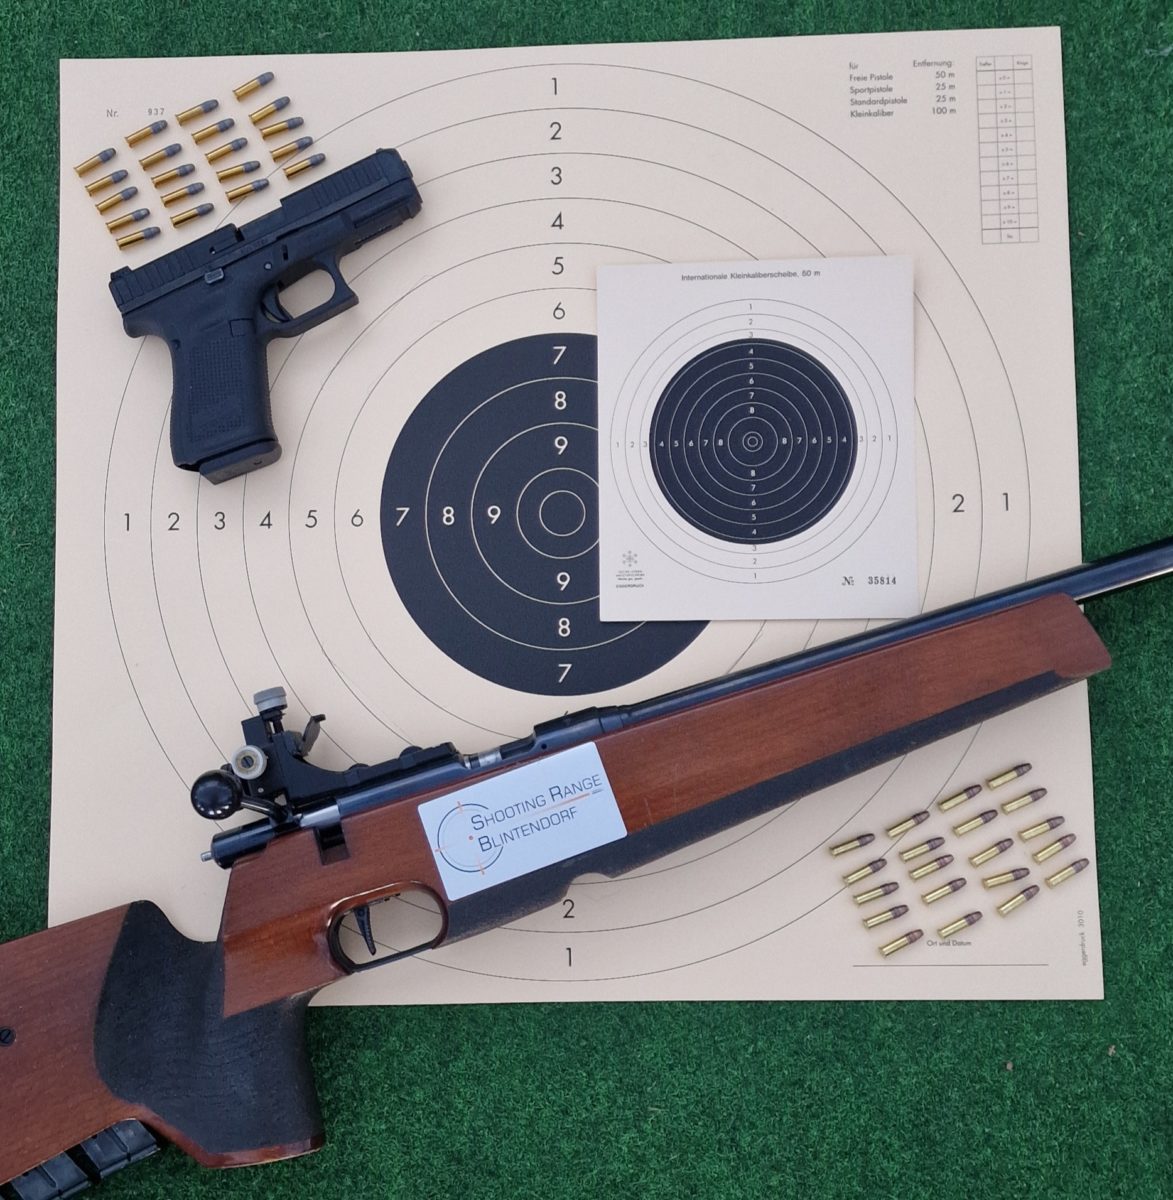 Newcomer-Paket Kleinkaliber Kärnten Shooting Range Blintendorf